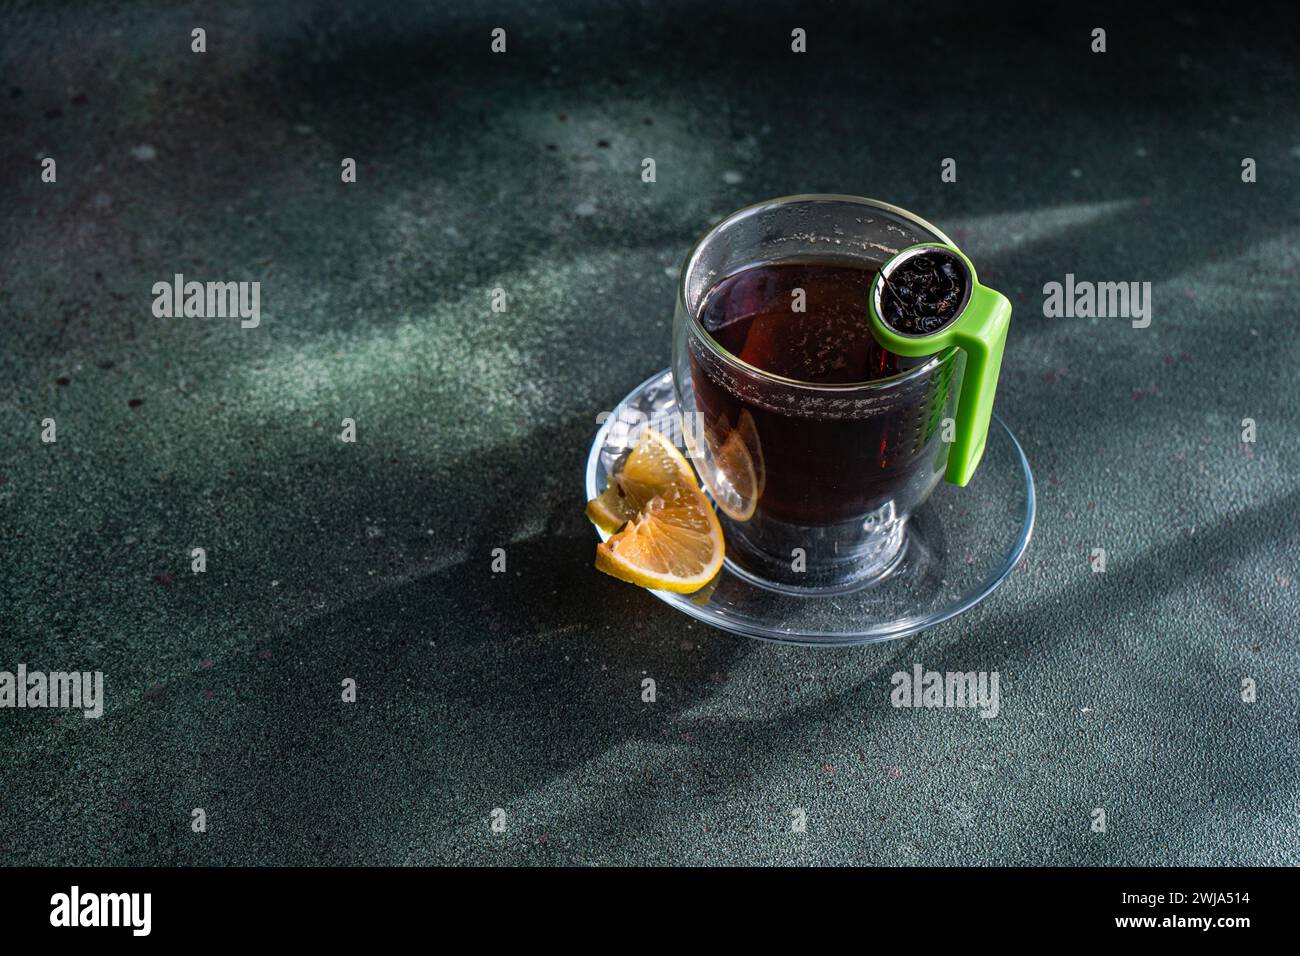 Du haut d'un verre de thé clair avec une tranche de citron et une passoire de thé vert sur un fond sombre texturé Banque D'Images